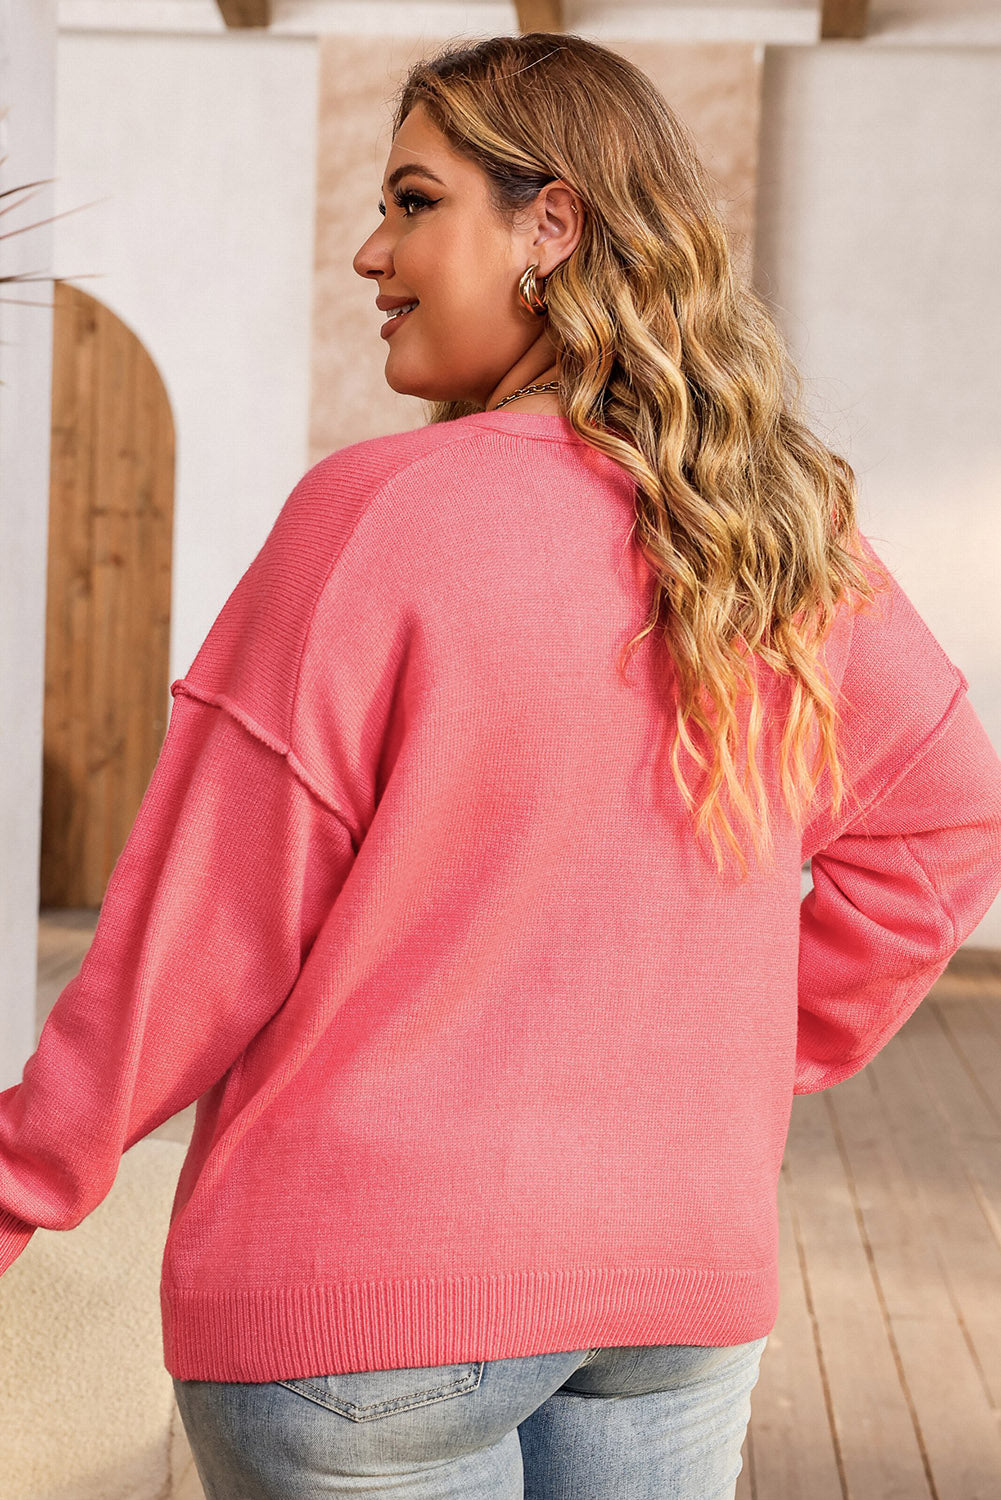 Maglione rosa con scollo a V con spalle scese taglie forti